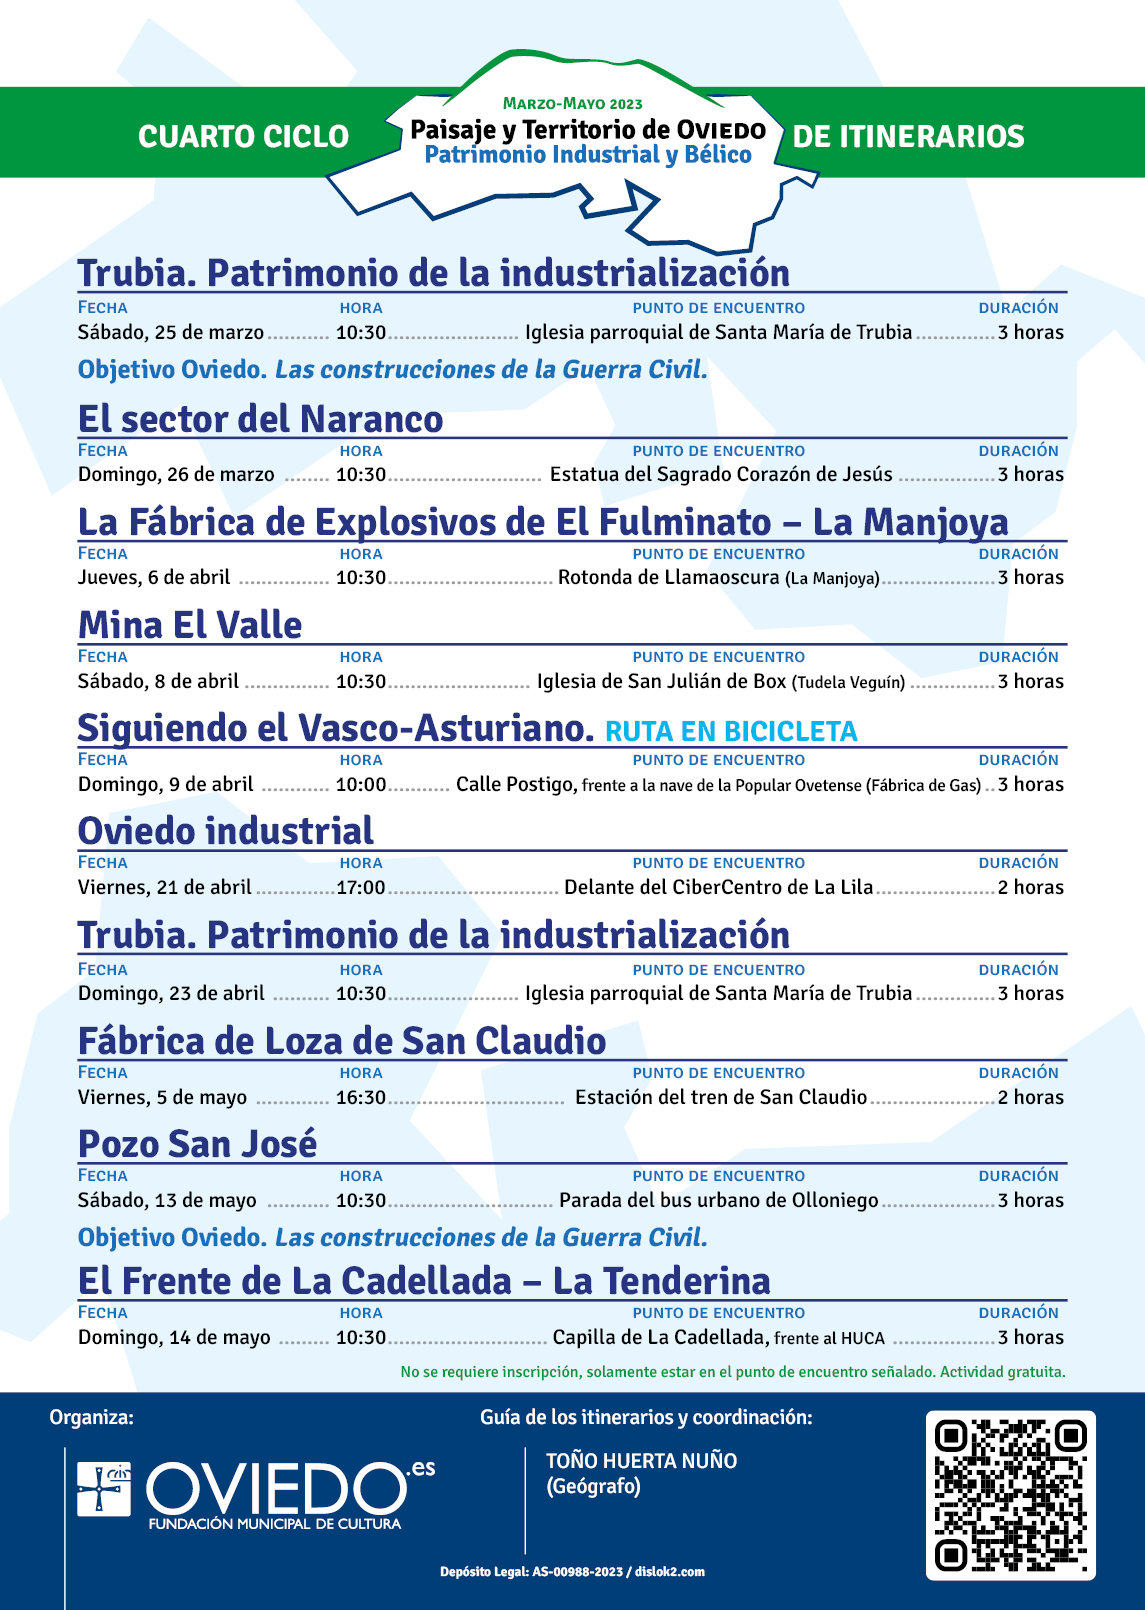 Paisaje y Territorio de Oviedo: patrimonio industrial y bélico